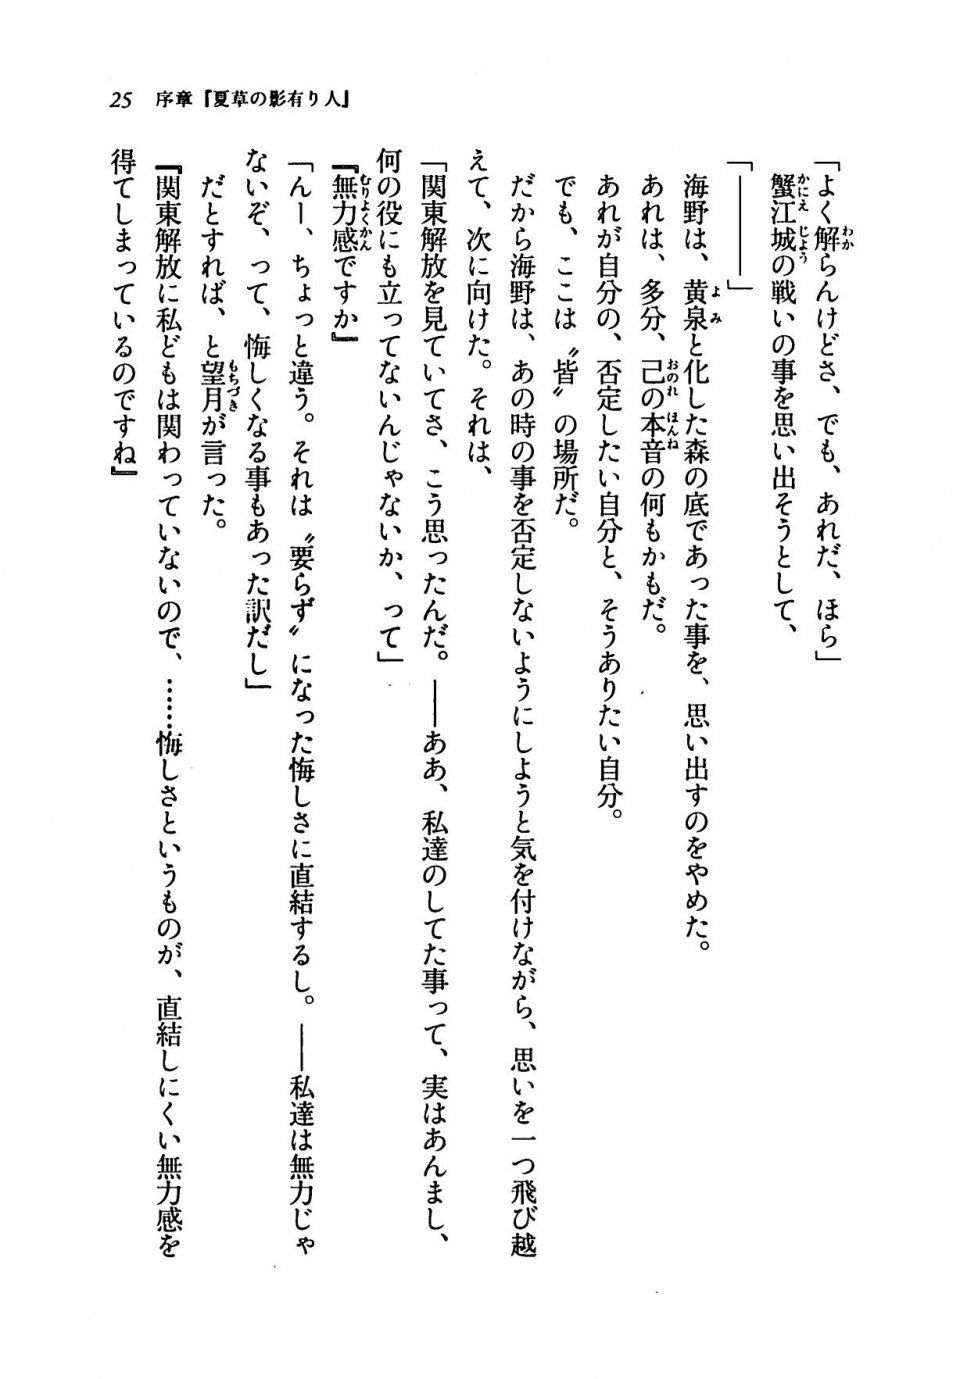 Kyoukai Senjou no Horizon LN Vol 19(8A) - Photo #25